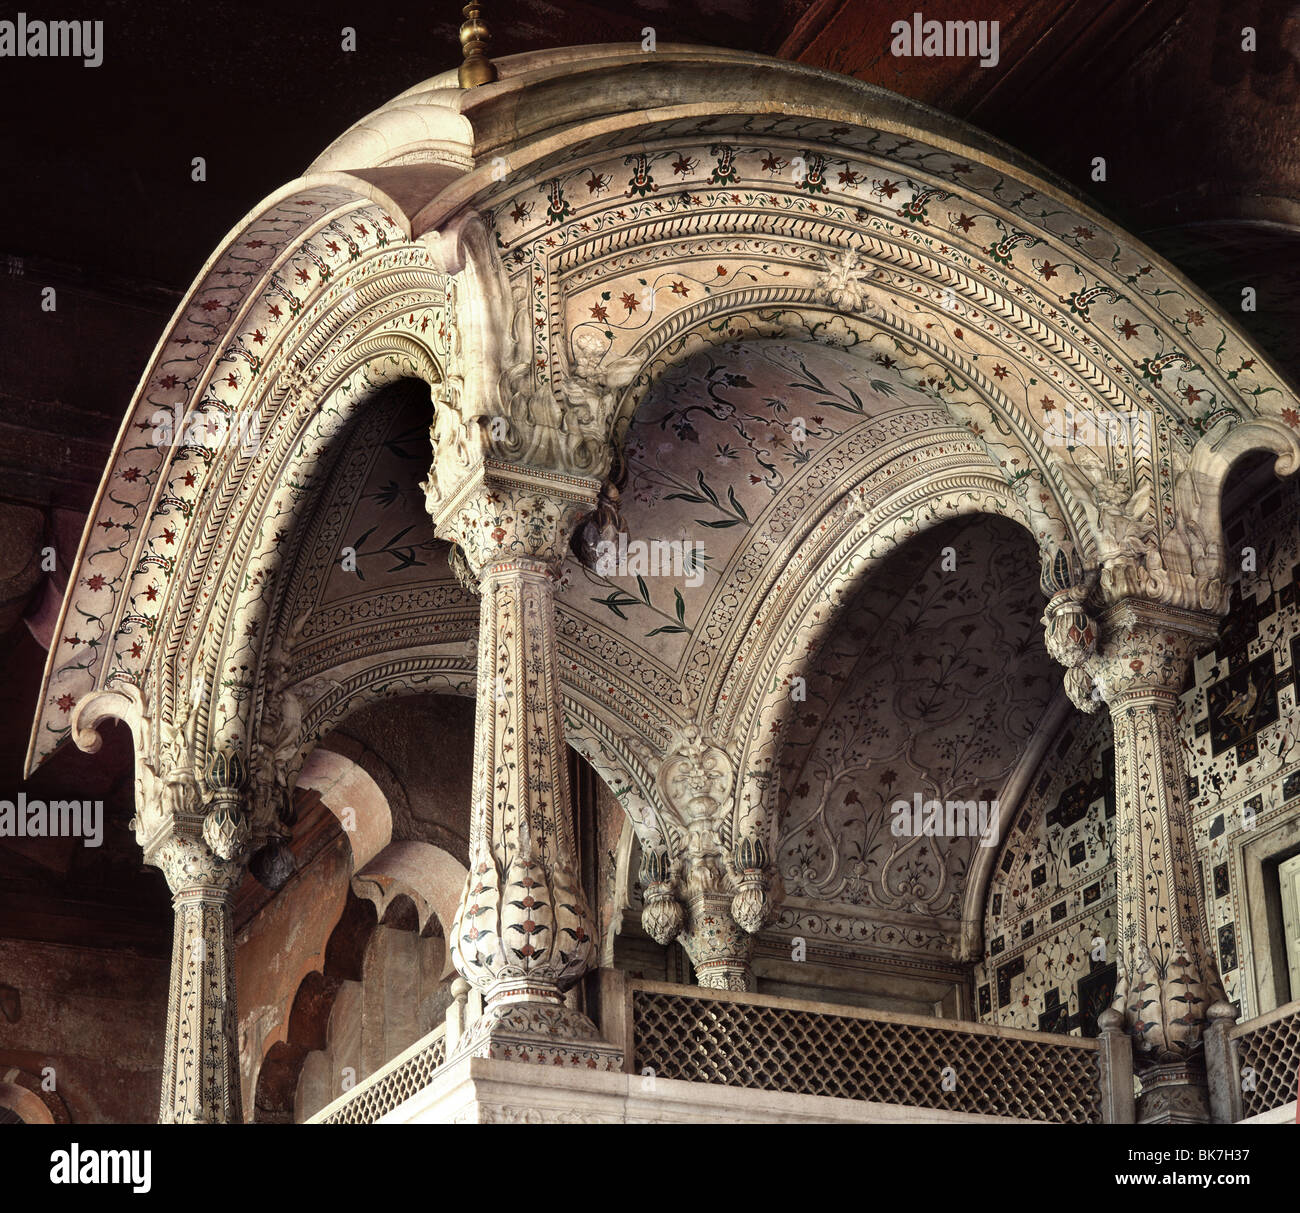 Der Thron des Akhbar, Roten Fort, UNESCO World Heritage Site, Delhi, Indien, Asien Stockfoto